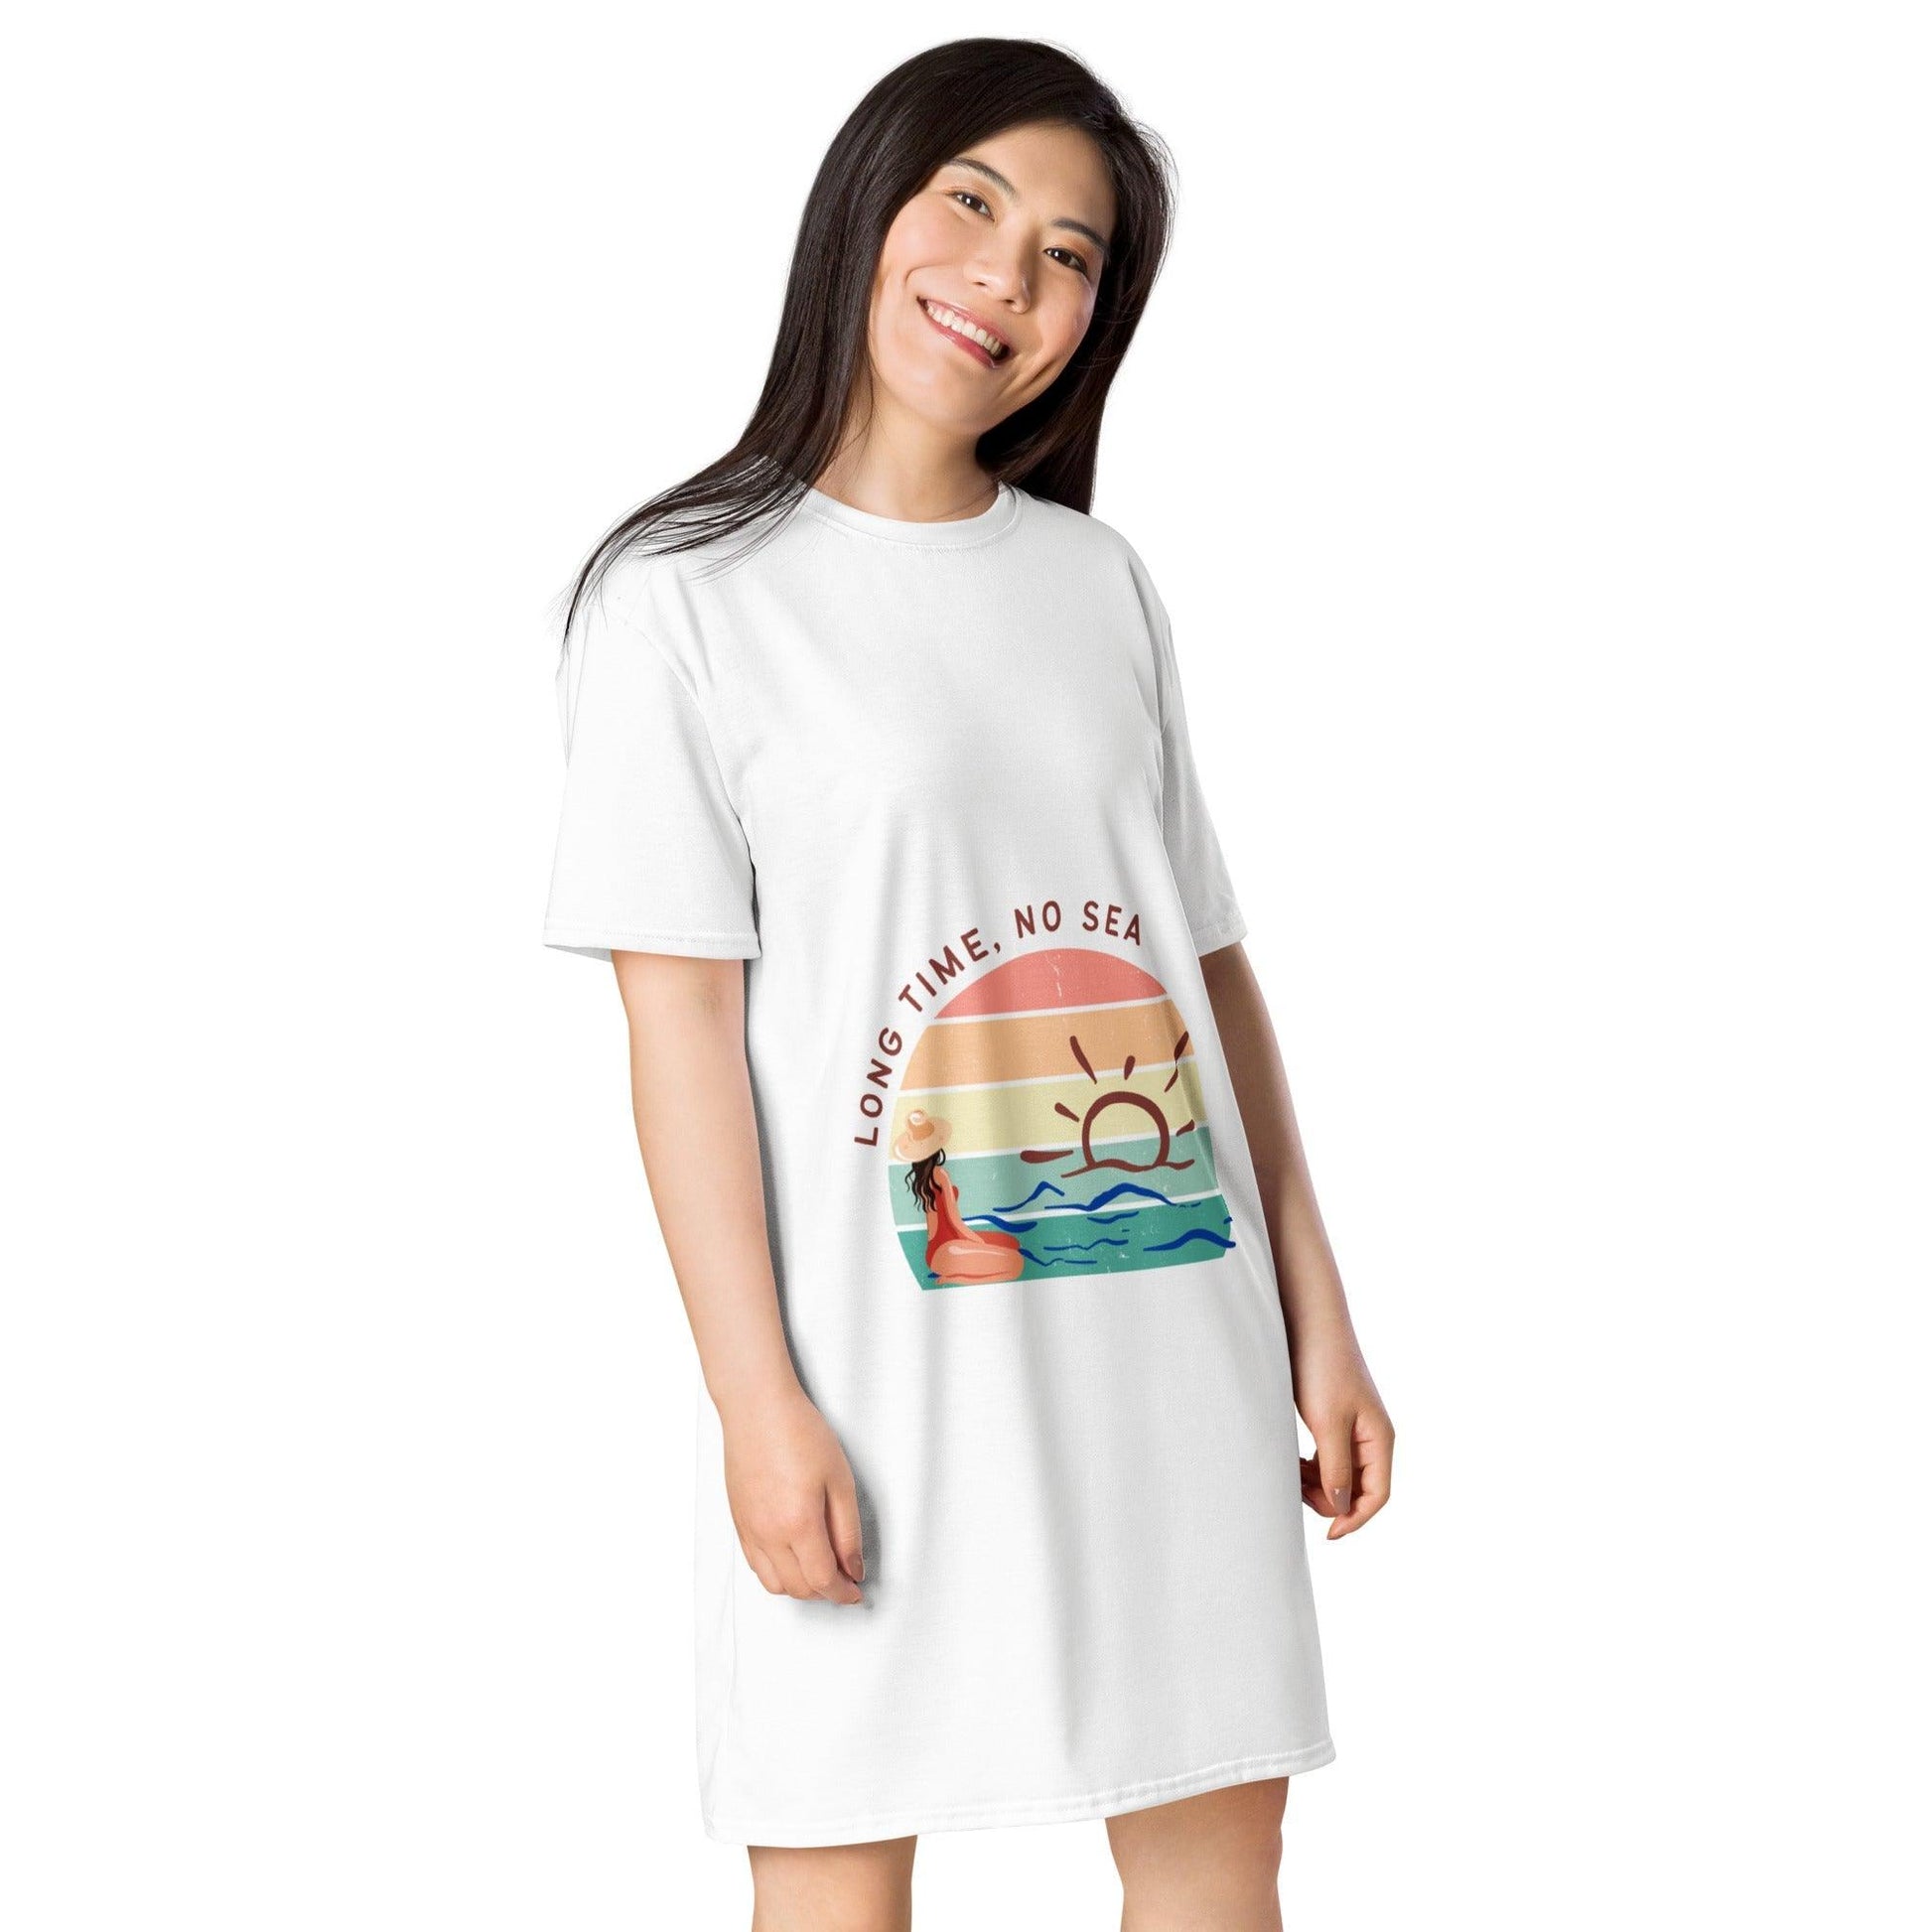 Vestido camiseta "Long Time, no sea" - TopShopperSpot